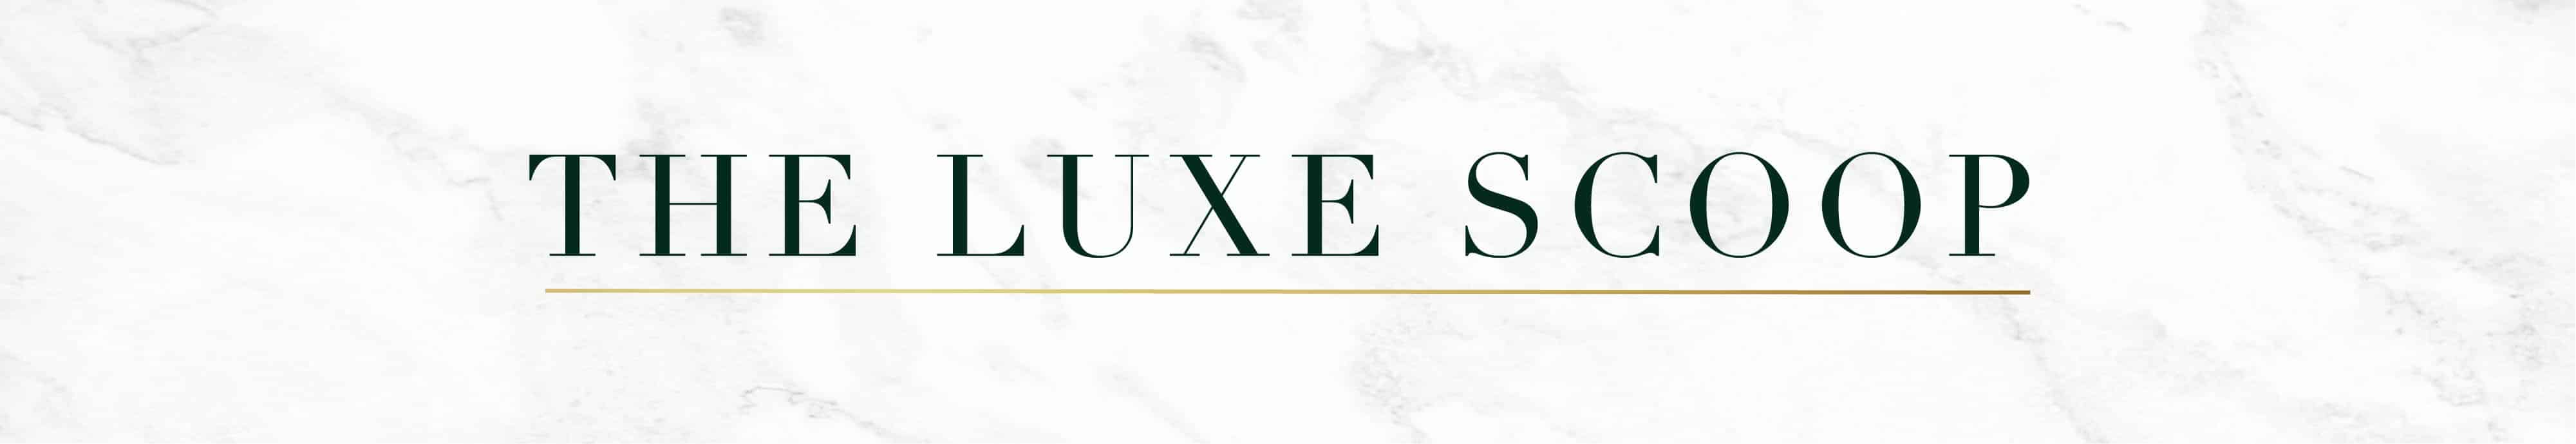 Luxescoop Luxury Magazine